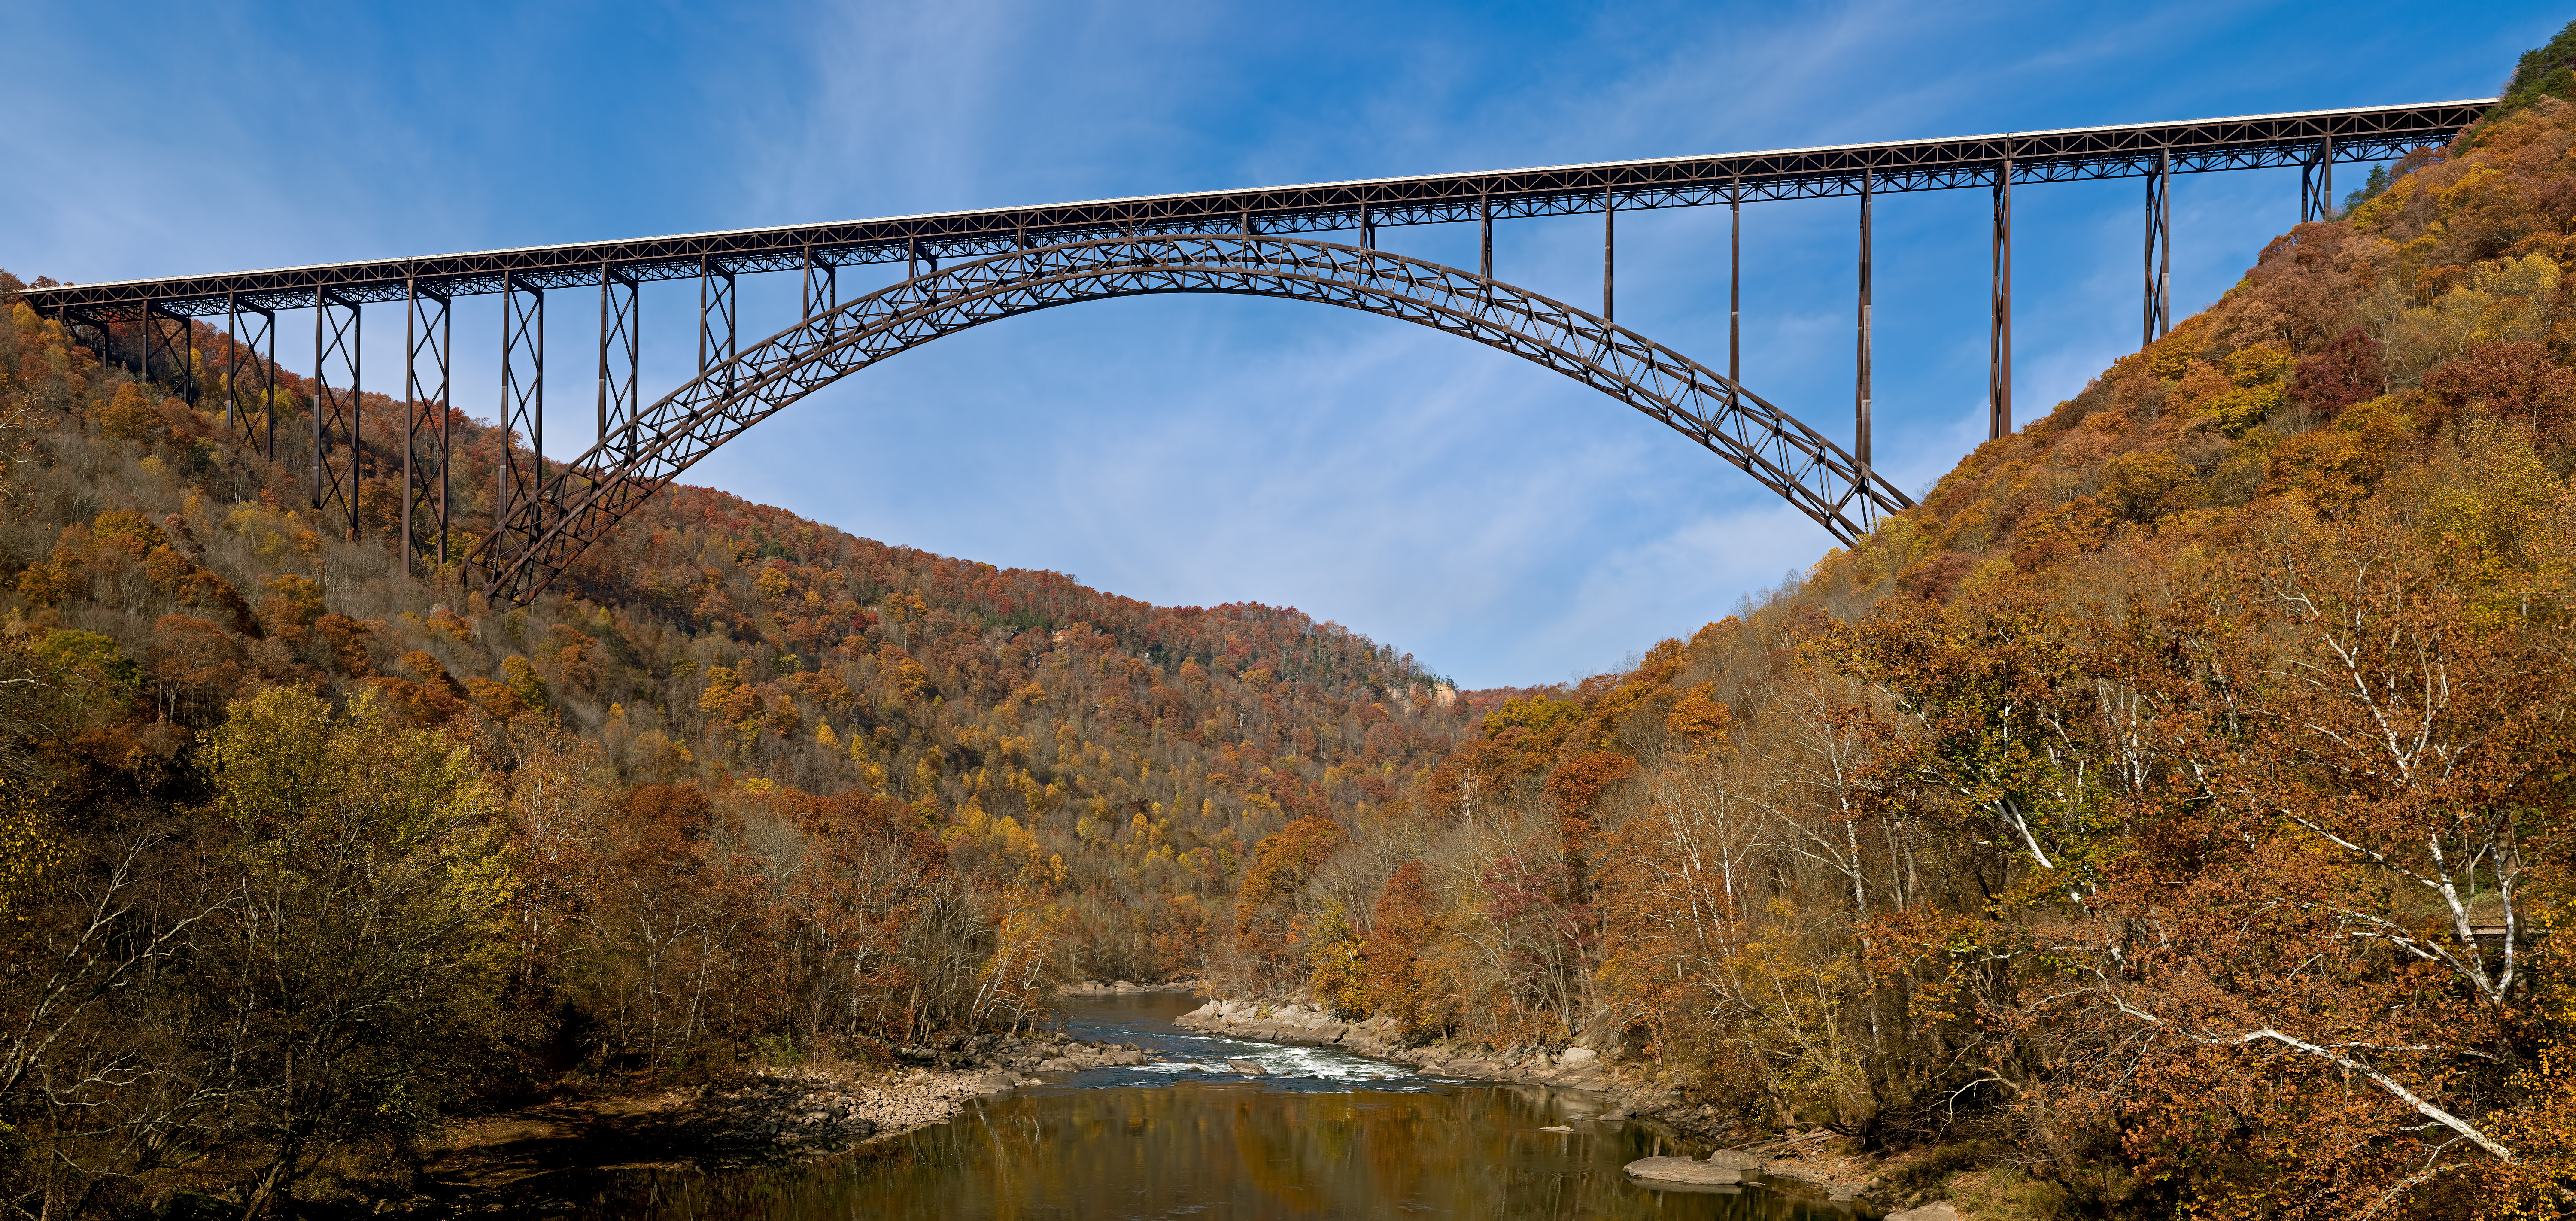 New River Gorge Bridge - Wikipedia